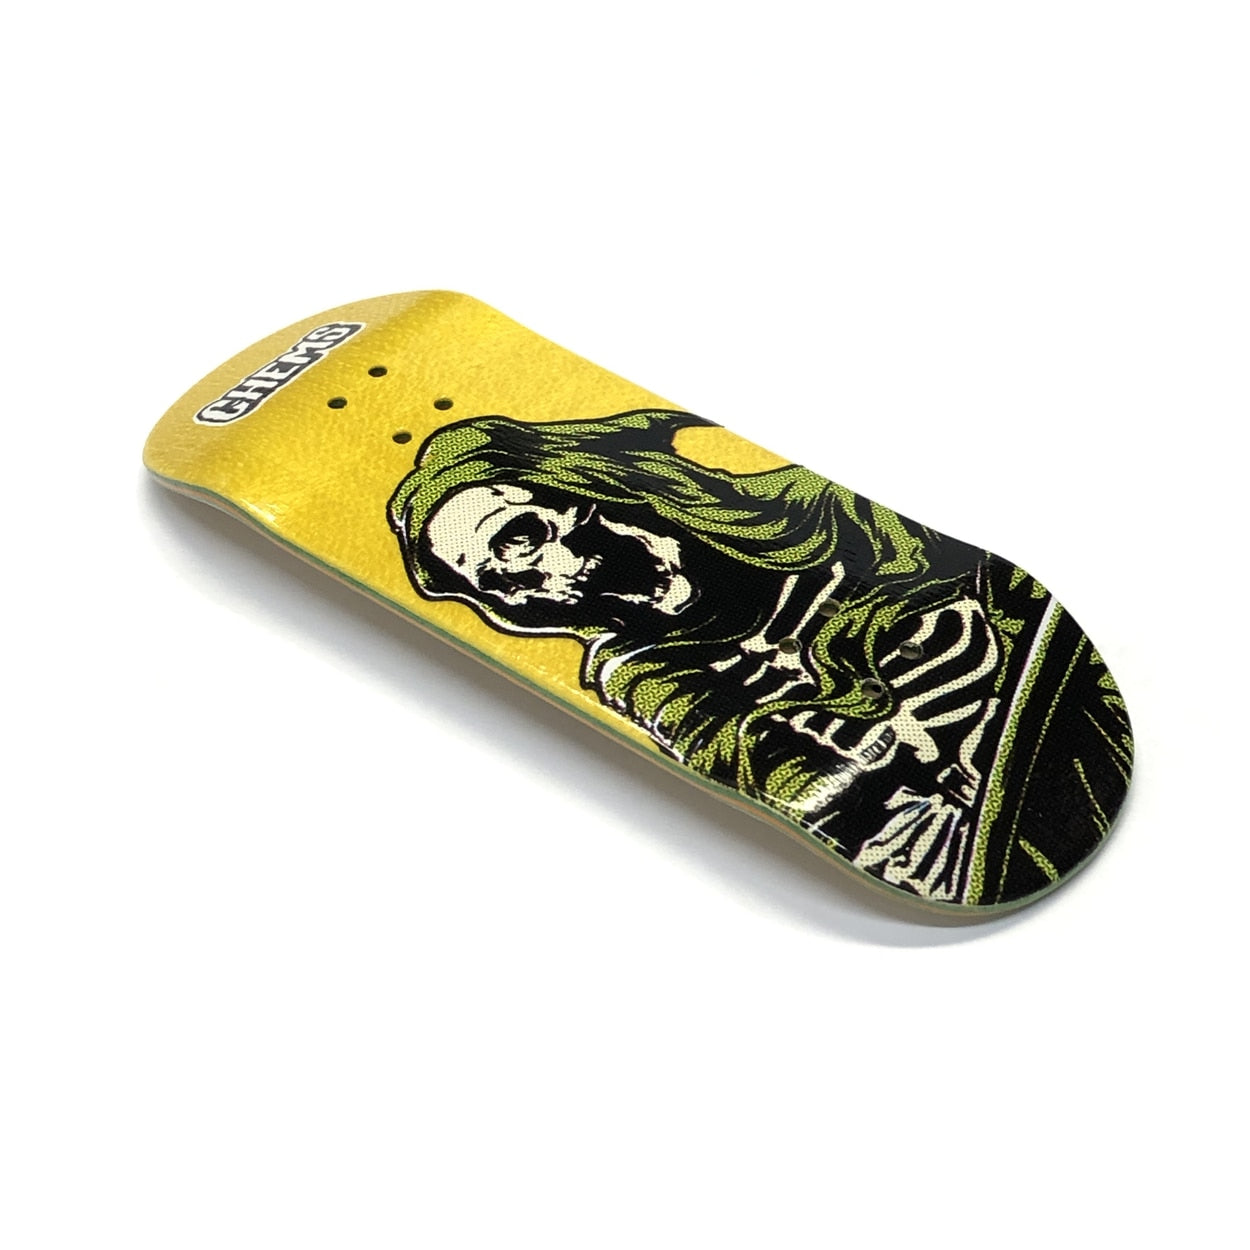 Chems x DK Yellow/Green Reaper Fingerboard Deck - Popsicle